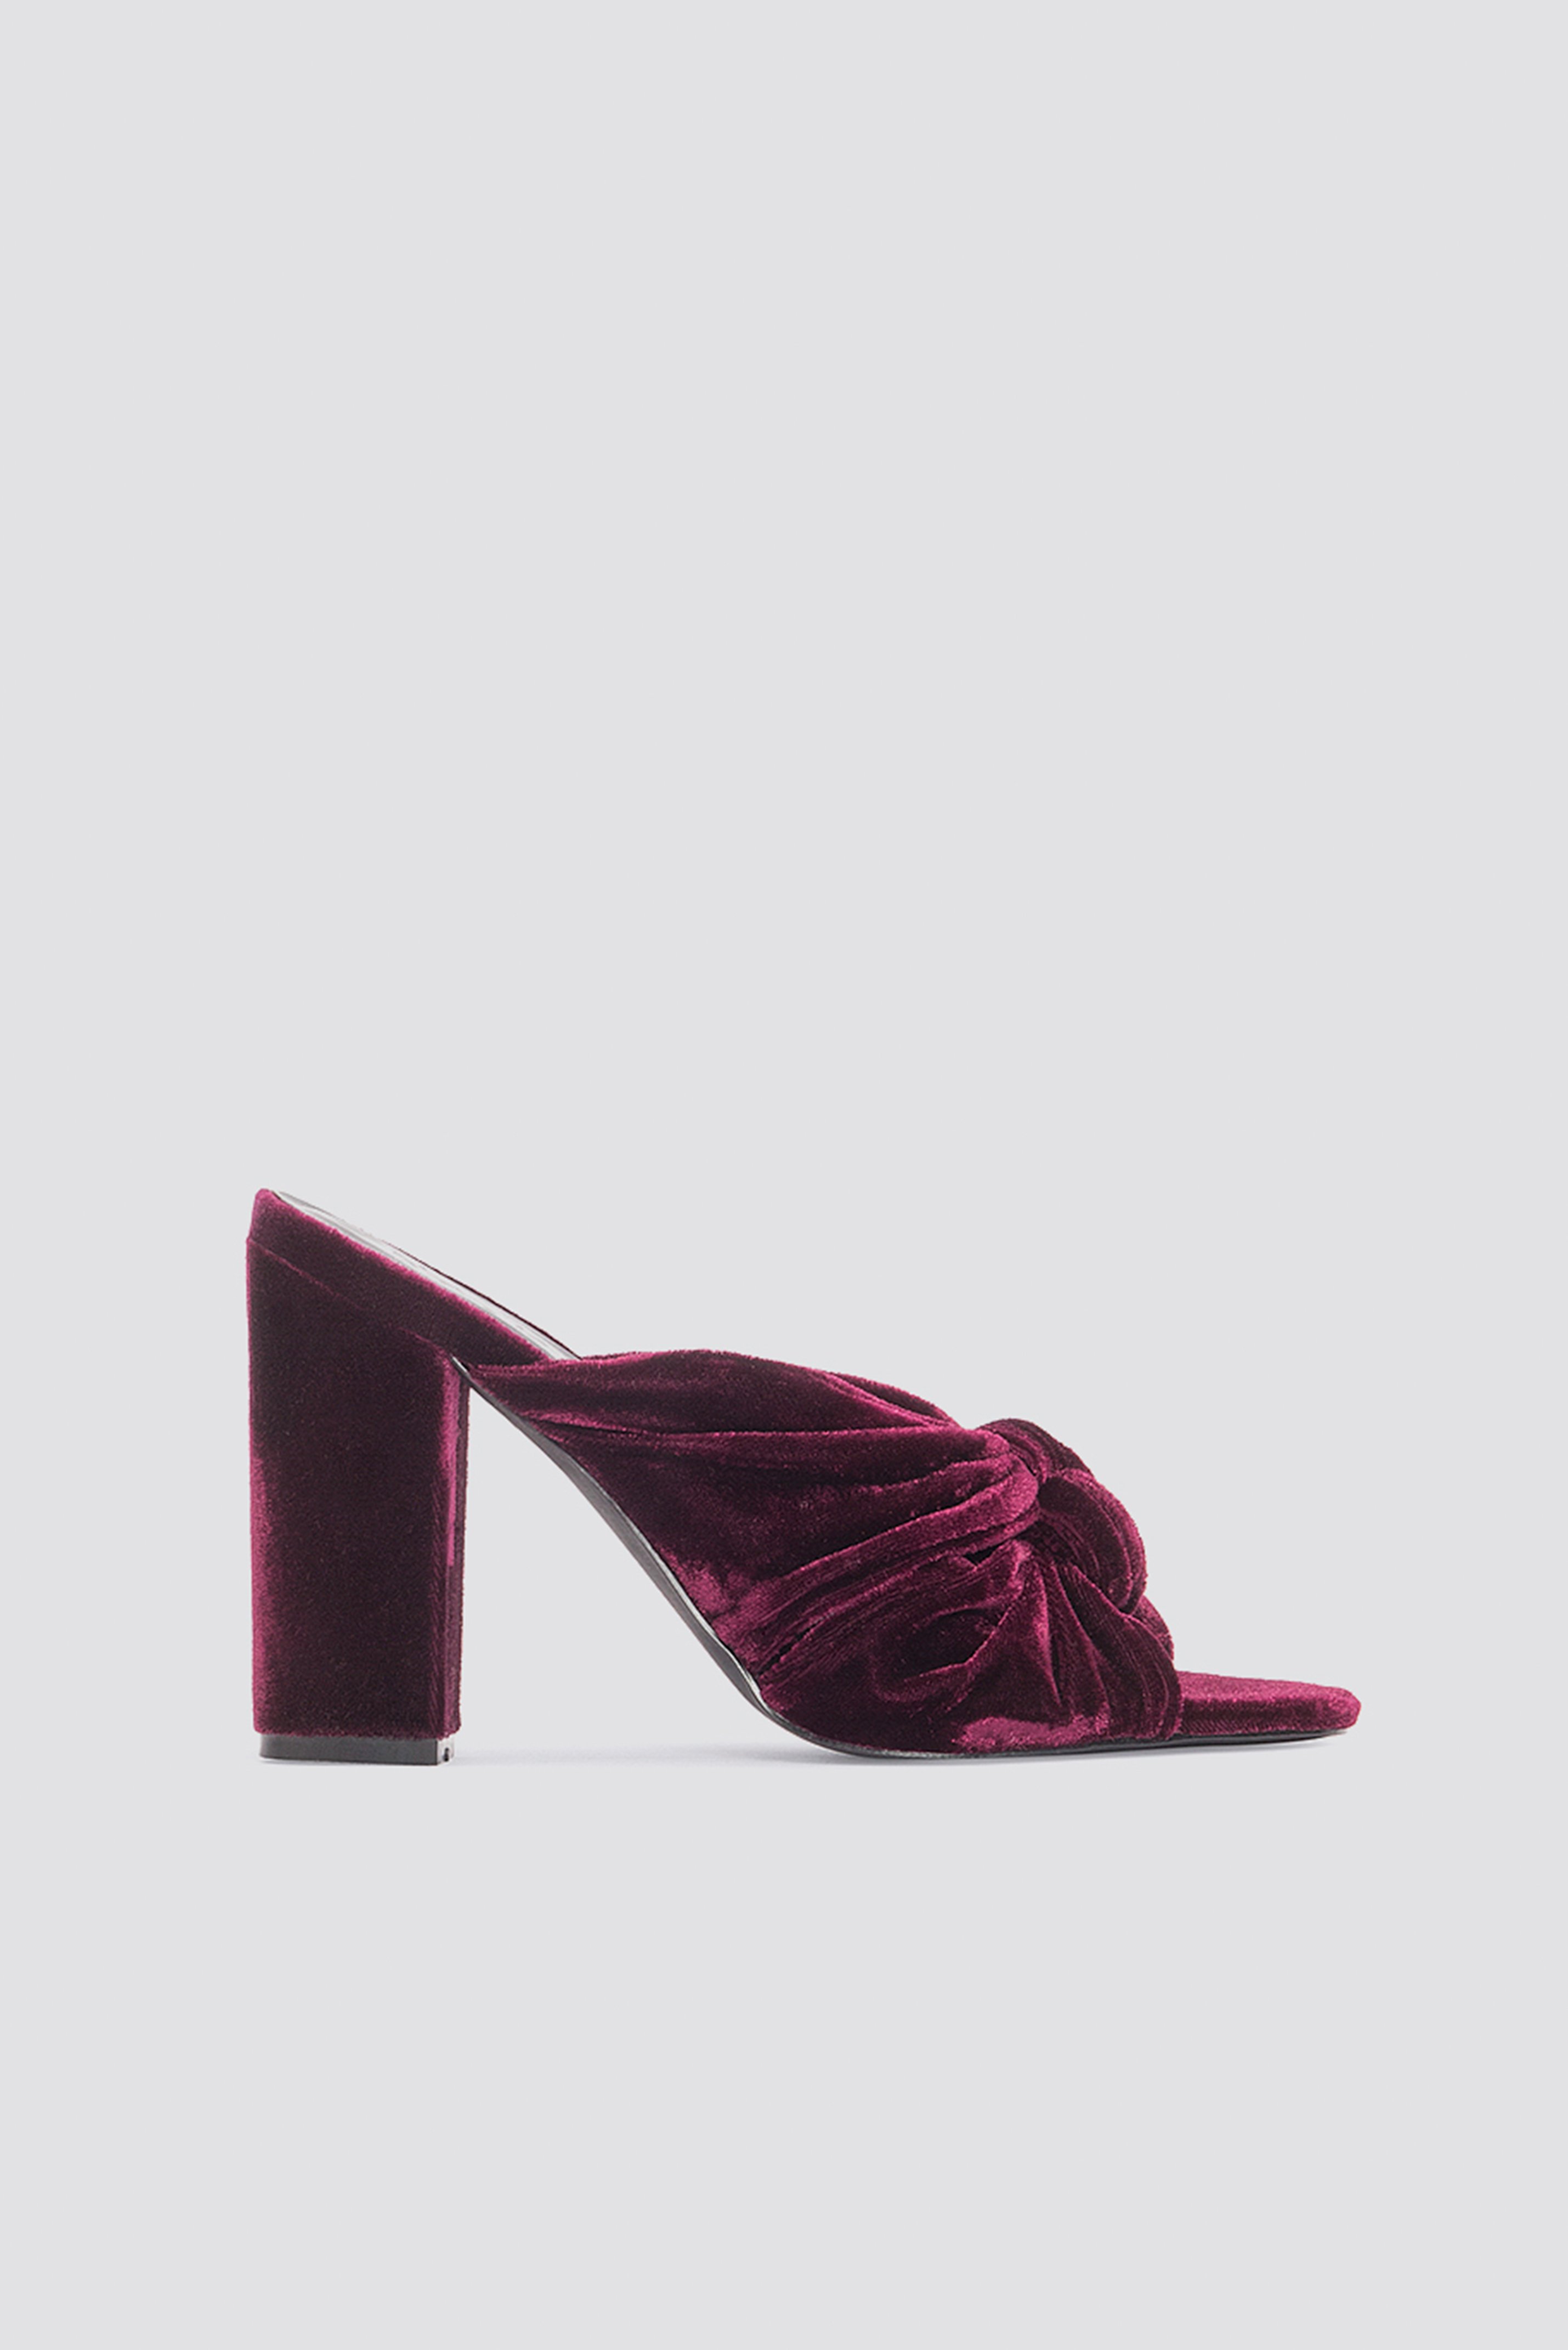 velvet purple heels